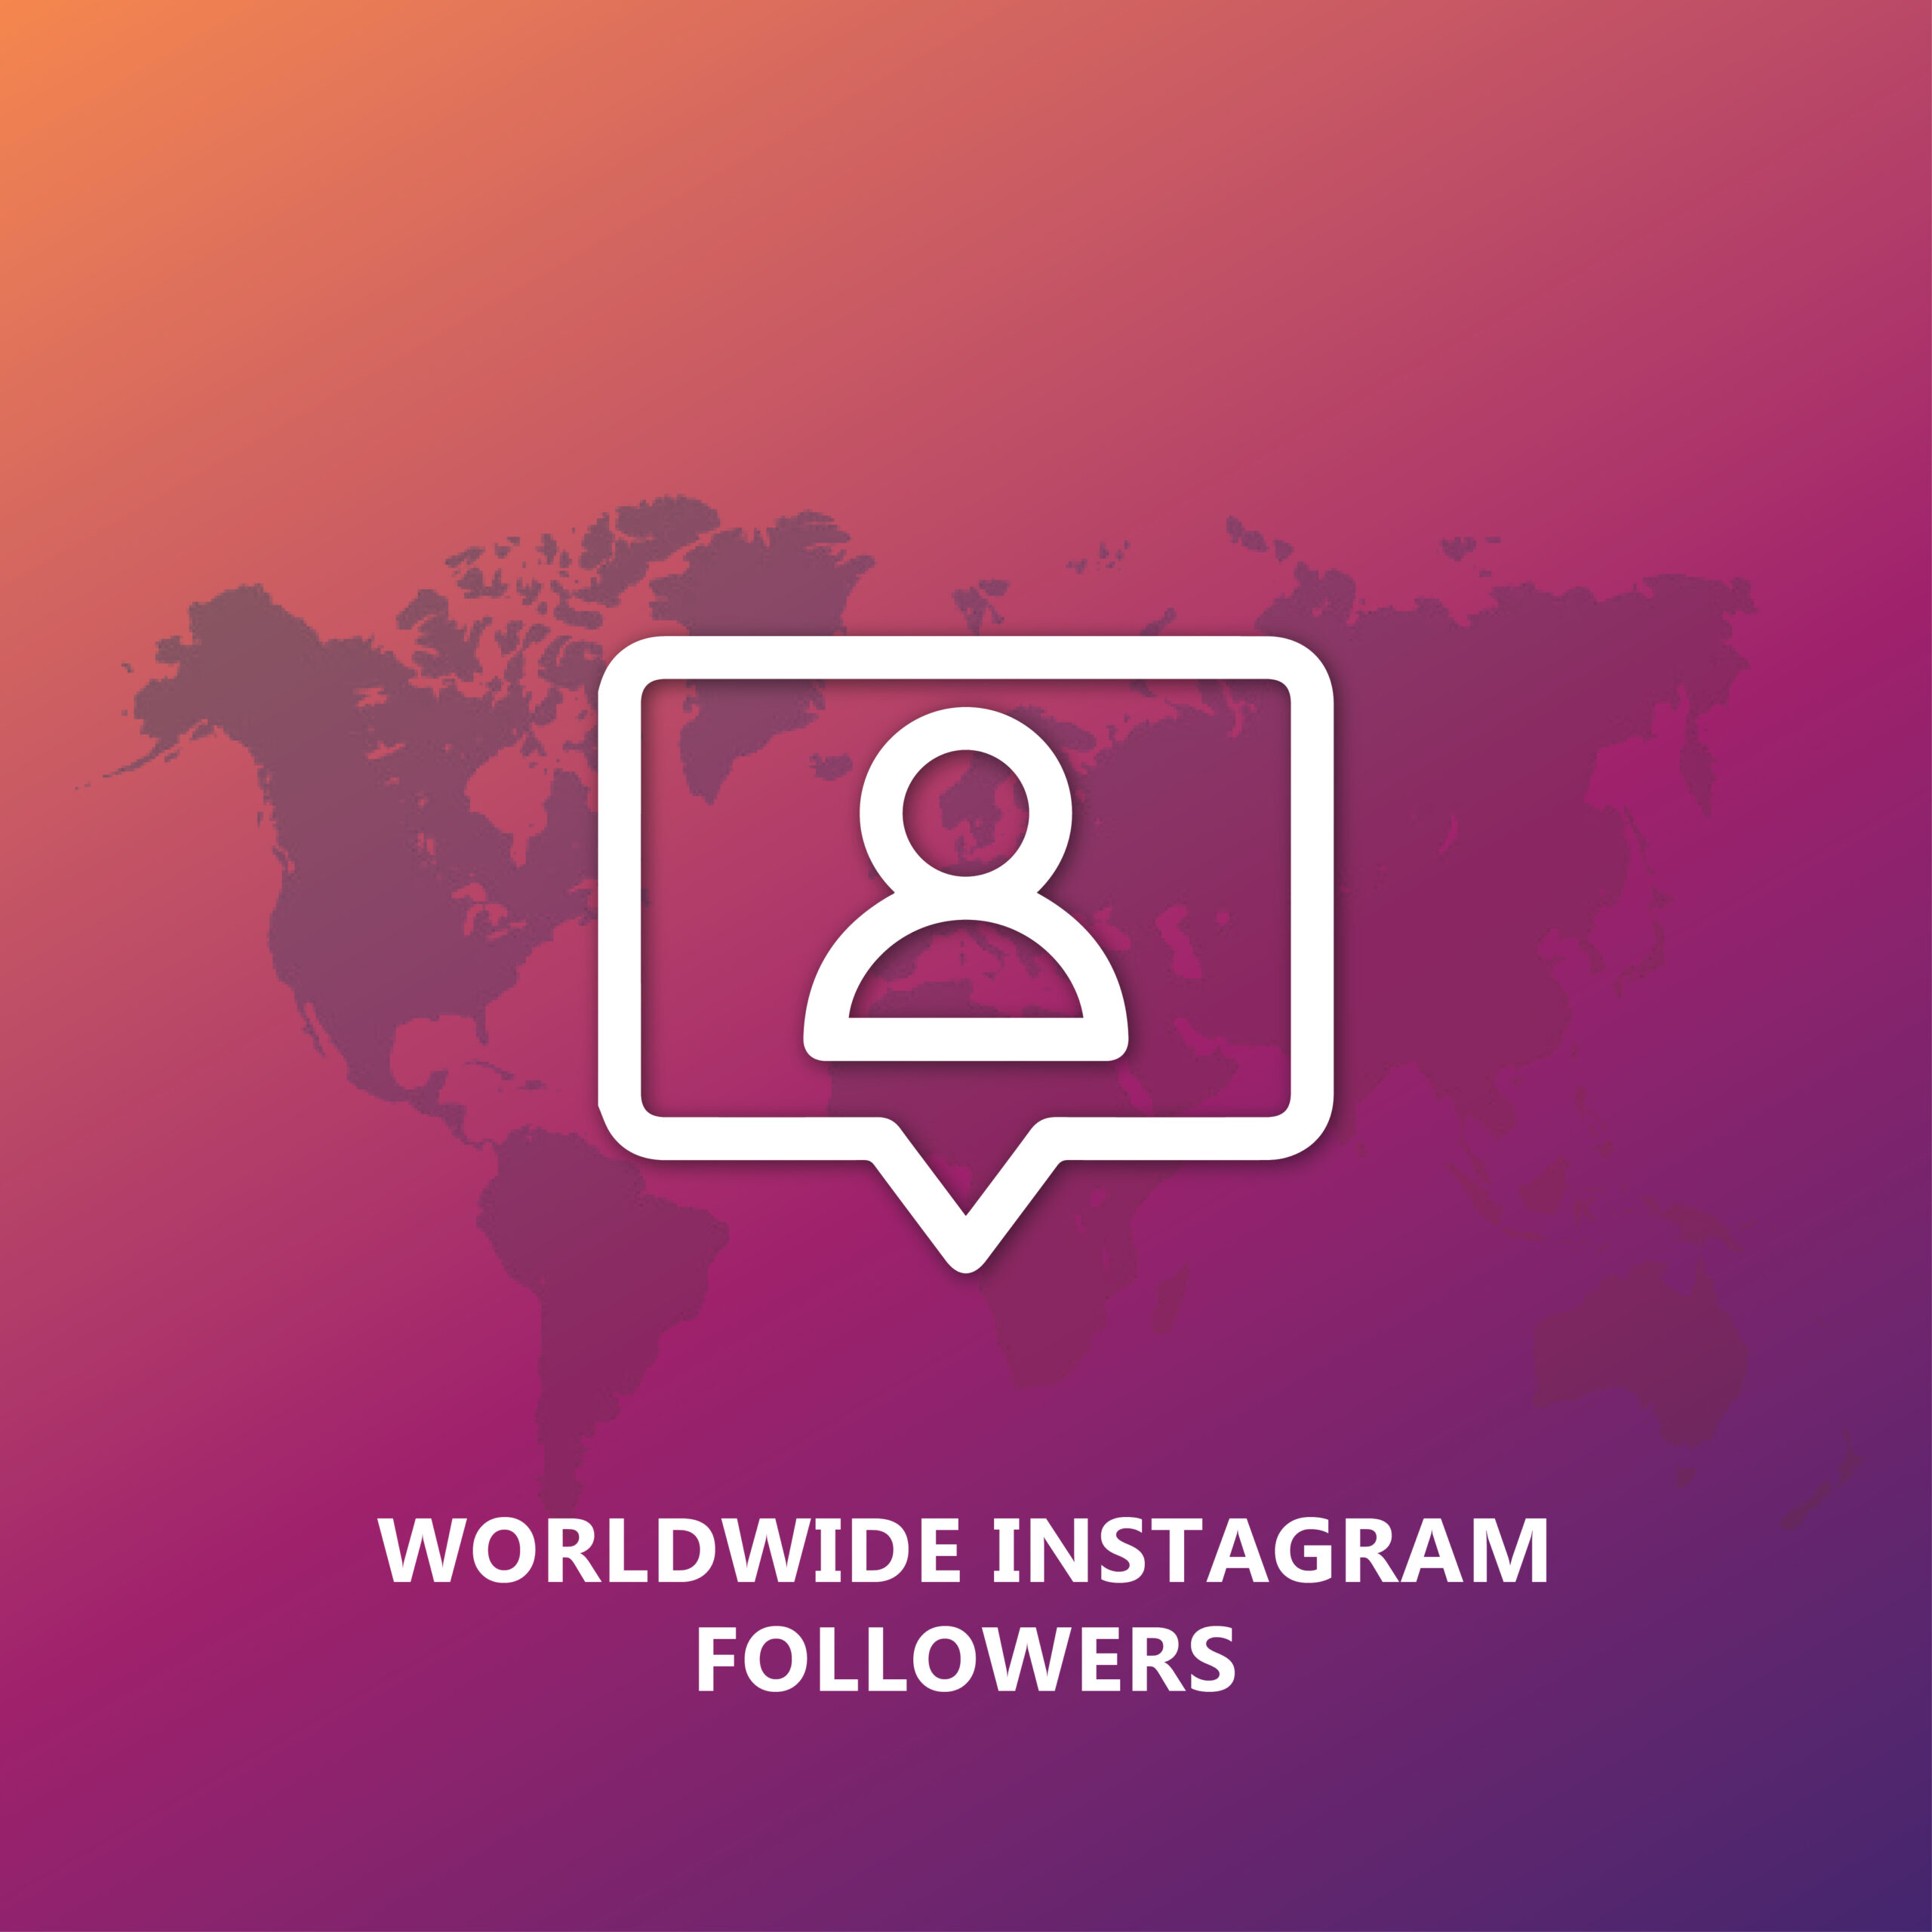 Worldwide Instagram Followers